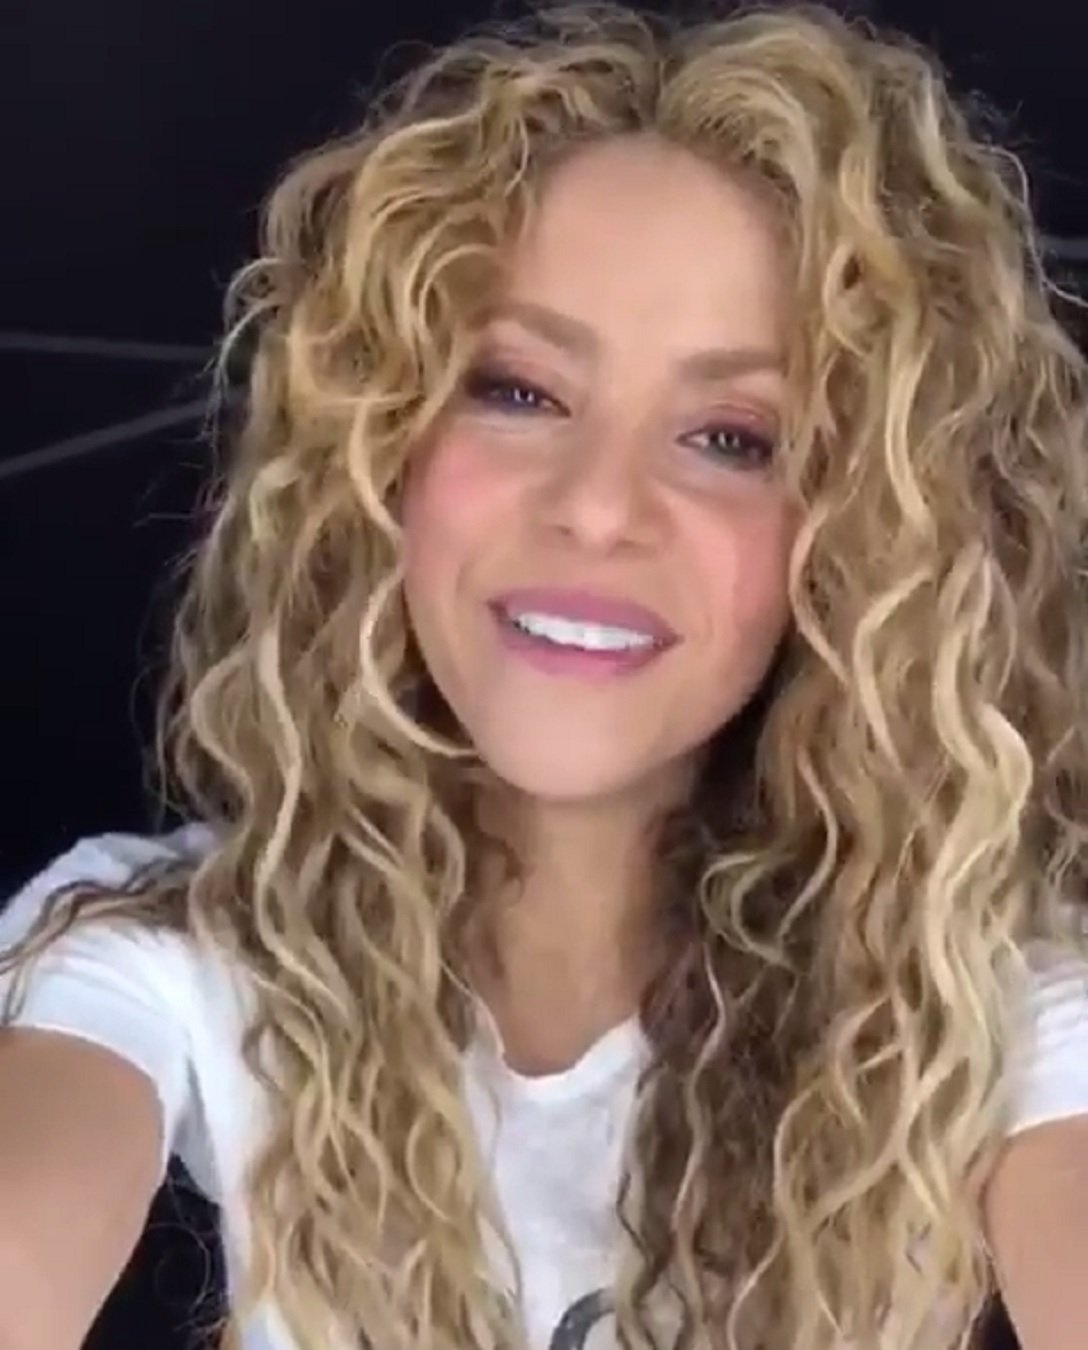 Shakira ja no és així: adeu ros platí. Les fotos per saber què li queda millor